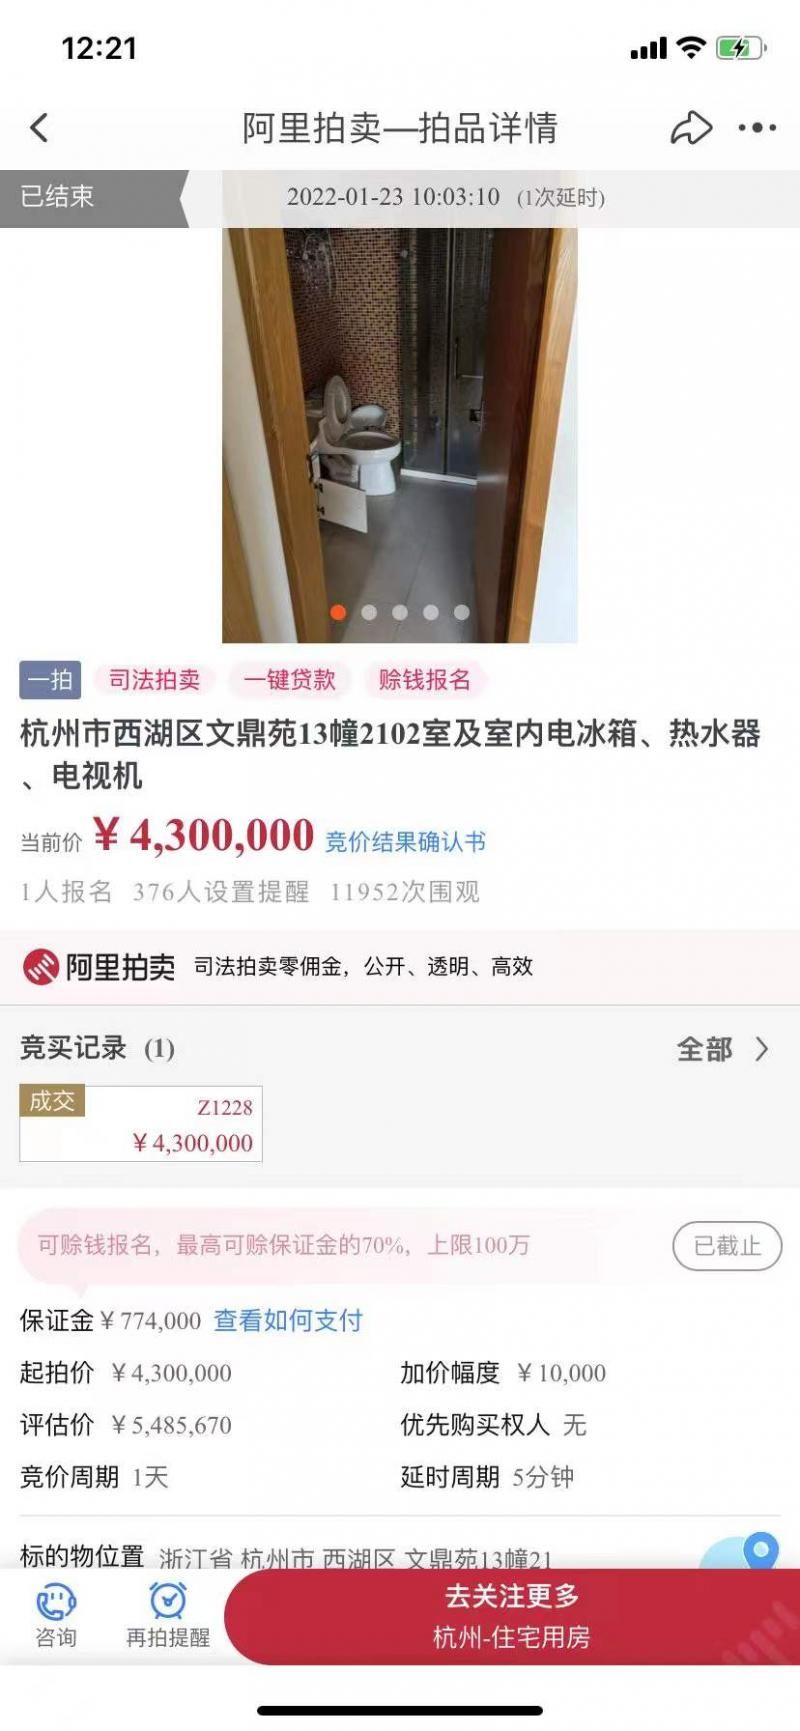 炒学区房的时代结束了吗？杭州“第一孟母盘”1年不到单价跌超40%|15楼财经 | 学区